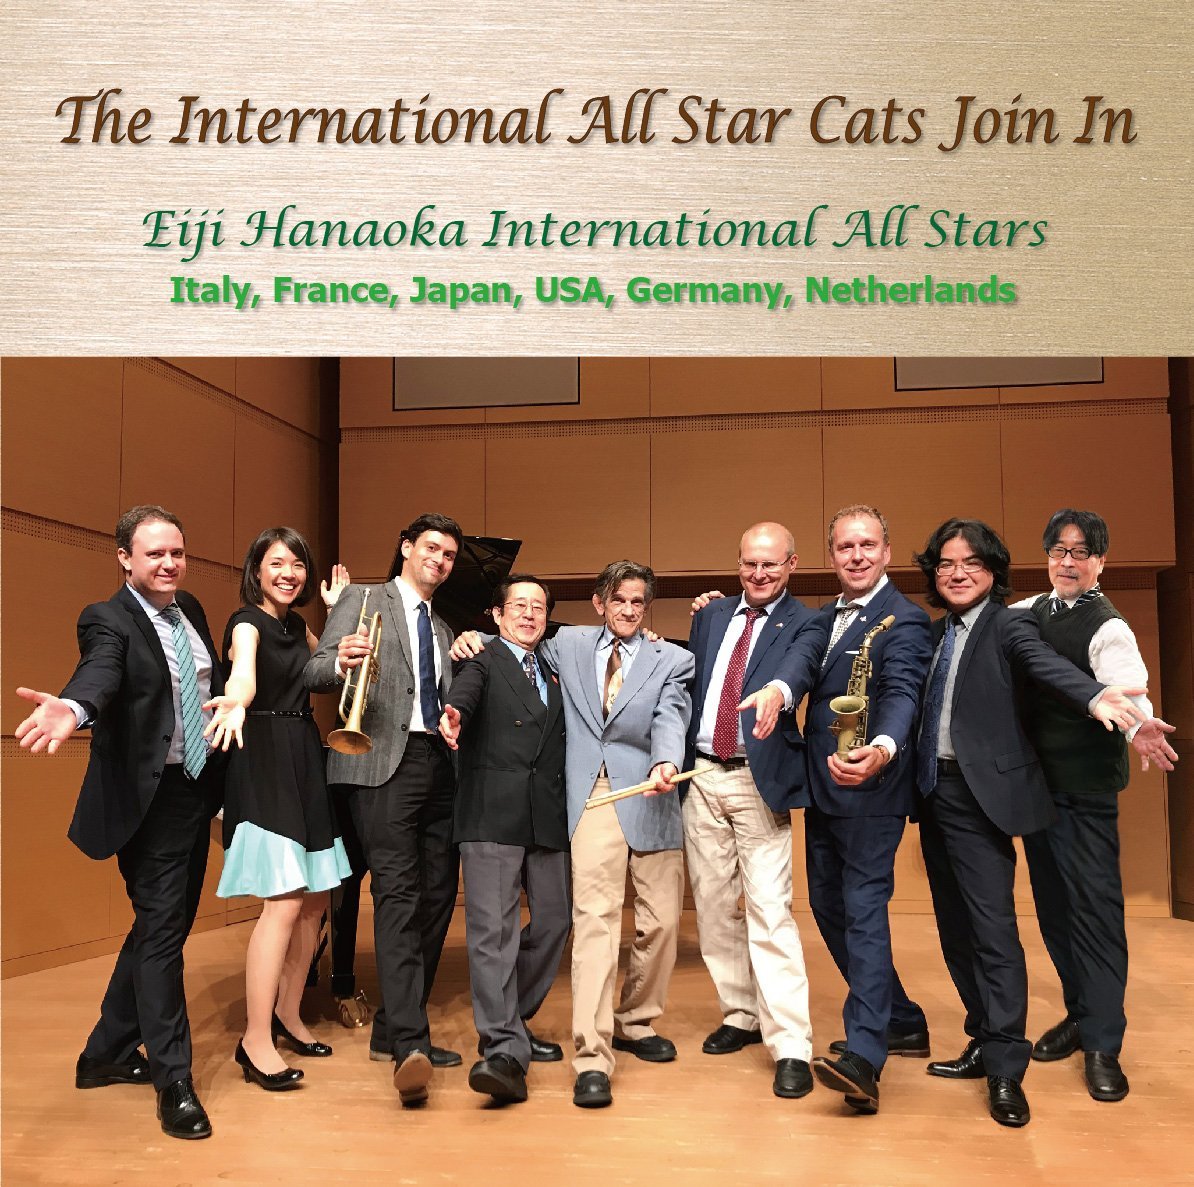 名歌でスイング! ! 〜The International All Star Cats Join In〜